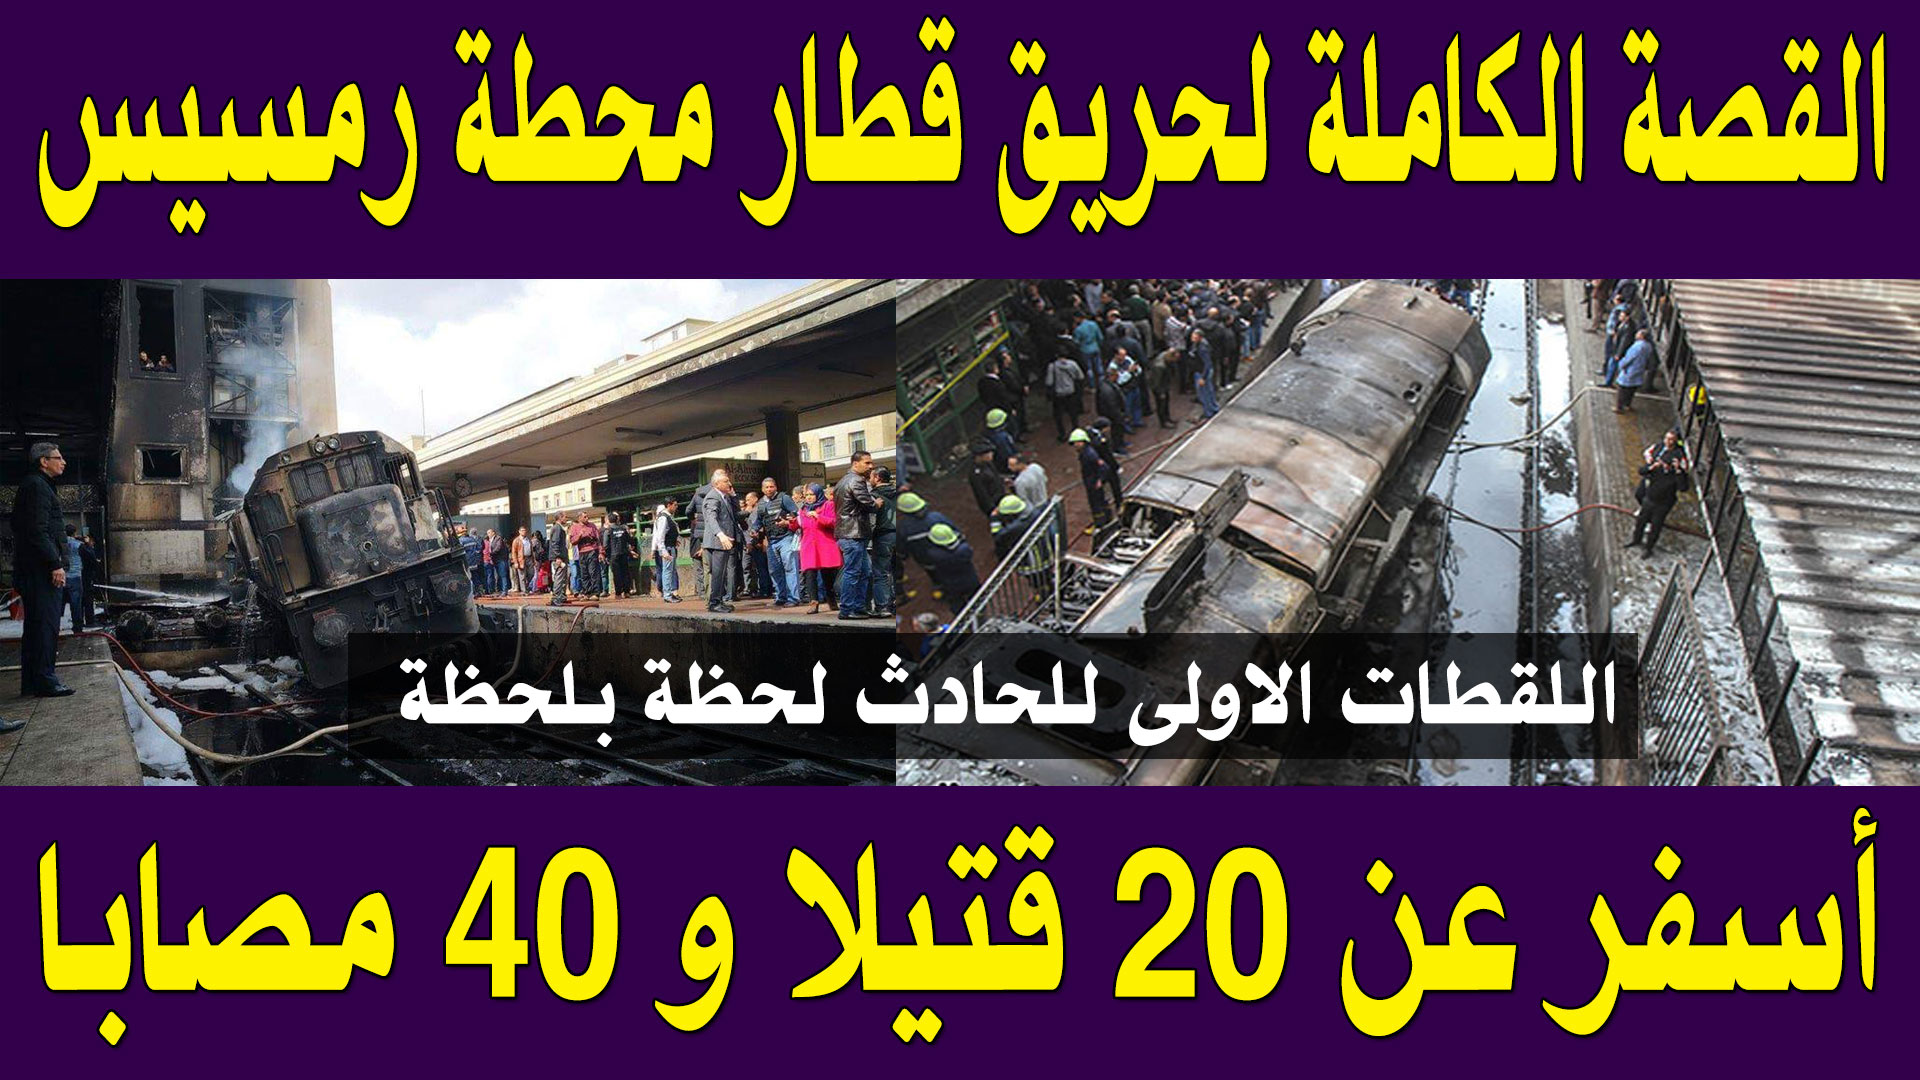  بالفيديو : القصة الكاملة لحريق قطار محطة رمسيس التى افجعت مصر